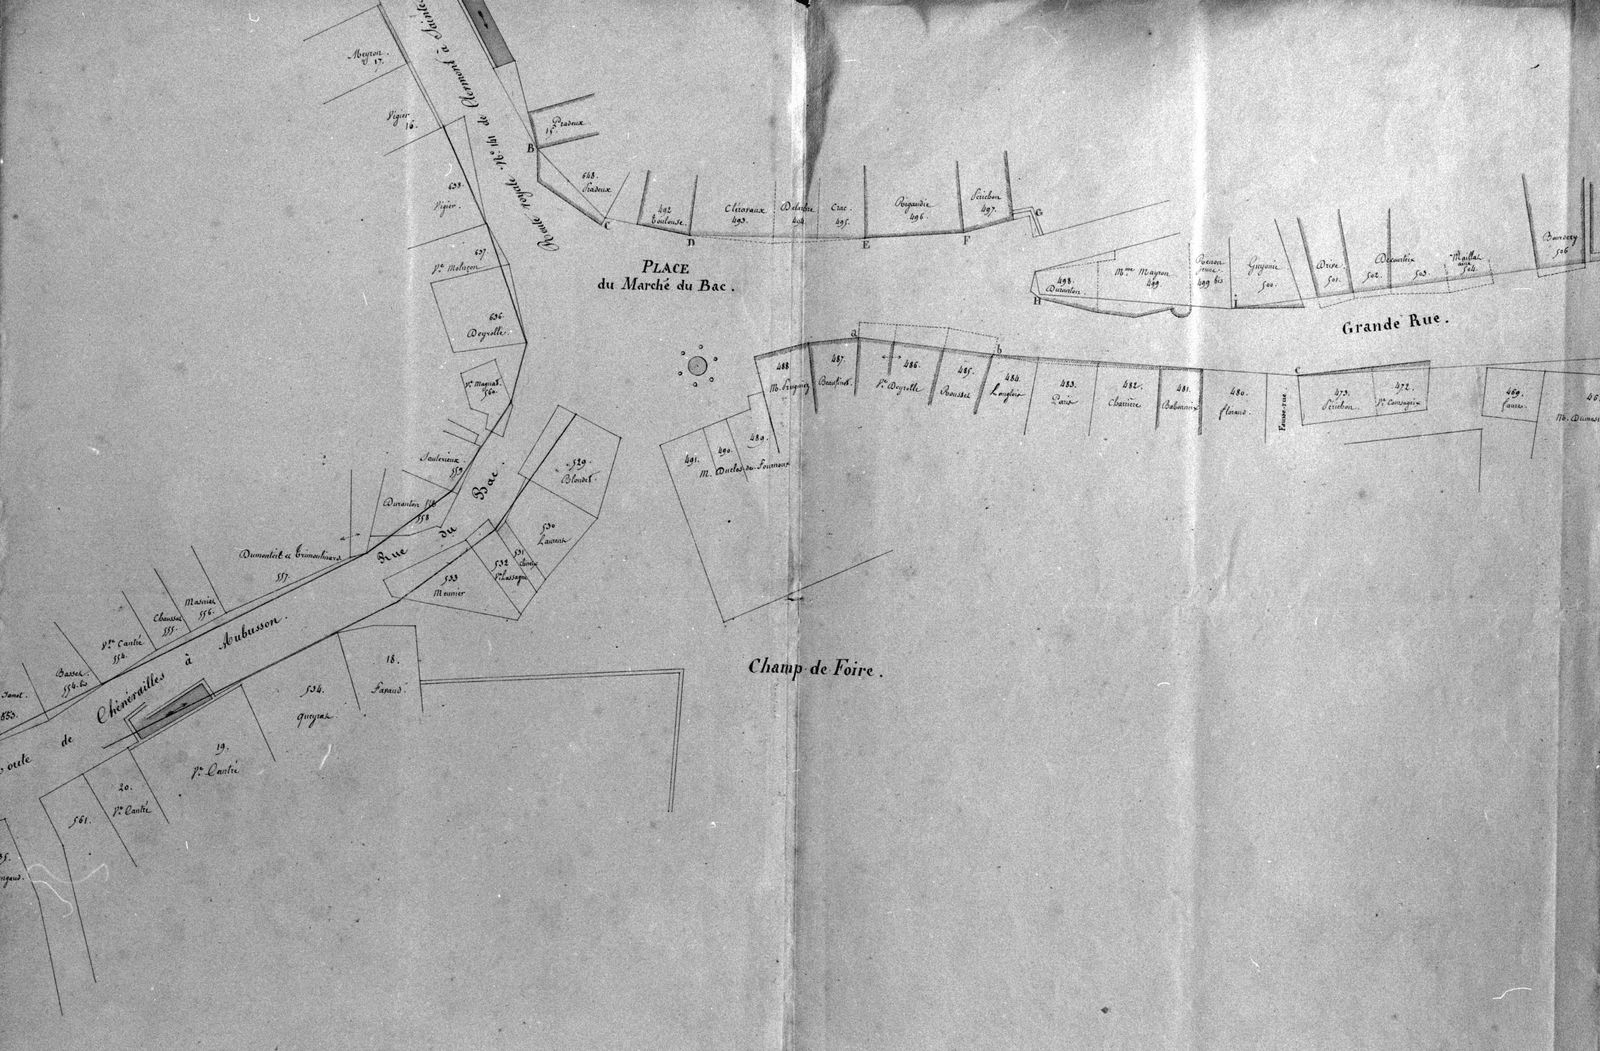 Plan de la traverse d'Aubusson (RN 141 de Clermont à Saintes) et des alignements ordonnés sur cette partie de route dans la Grande Rue, à son extrémité est (1830 - établi par le géomètre Callier) (AC Aubusson) 